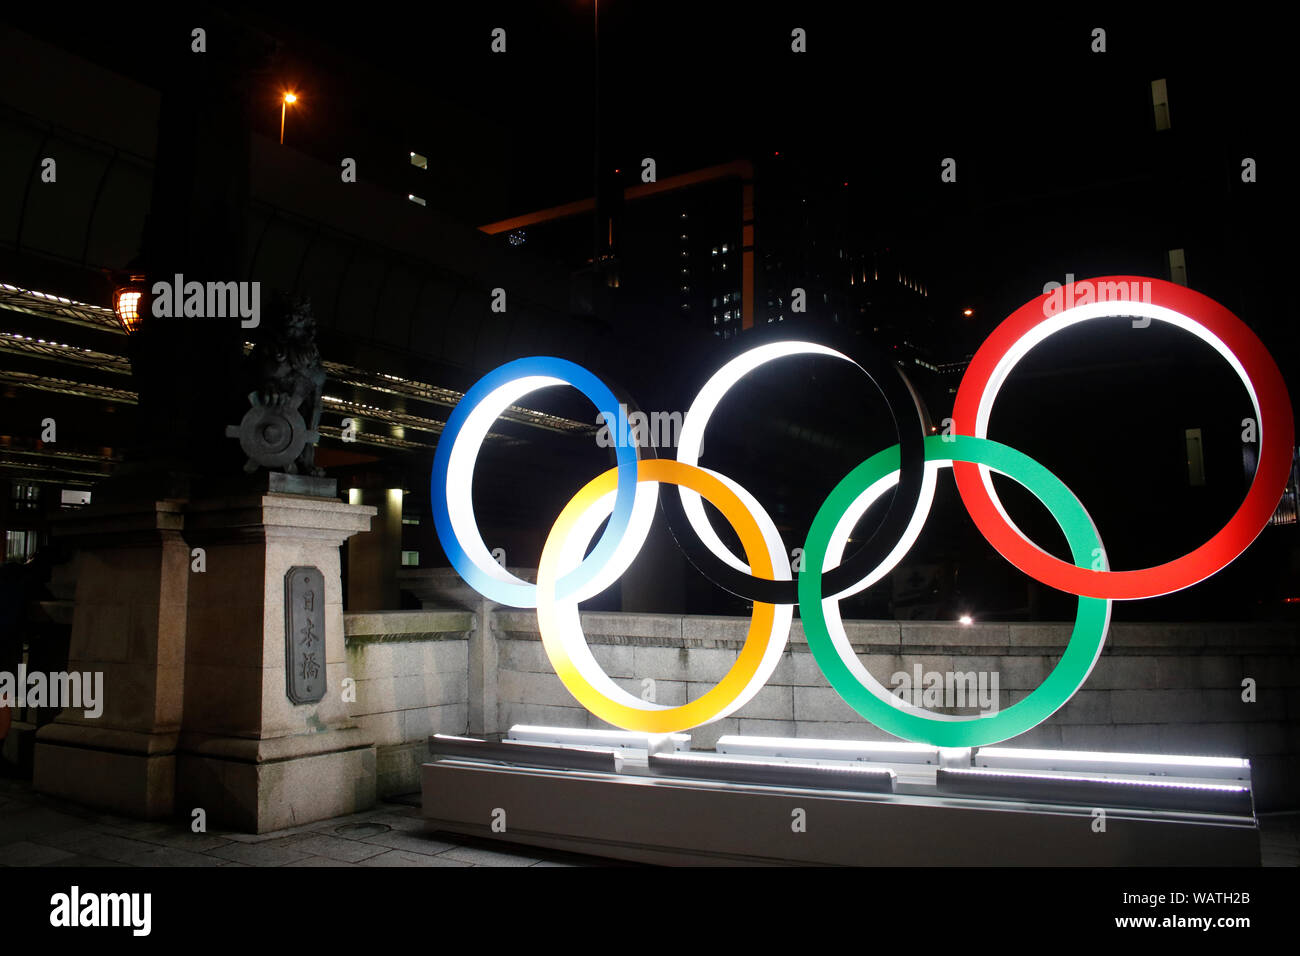 Les anneaux olympiques sont affichées sur le pont Nihonbashi a marqué un an loin de les Jeux Olympiques et Paralympiques de Tokyo 2020. Nihonbashi, Tokyo. Banque D'Images